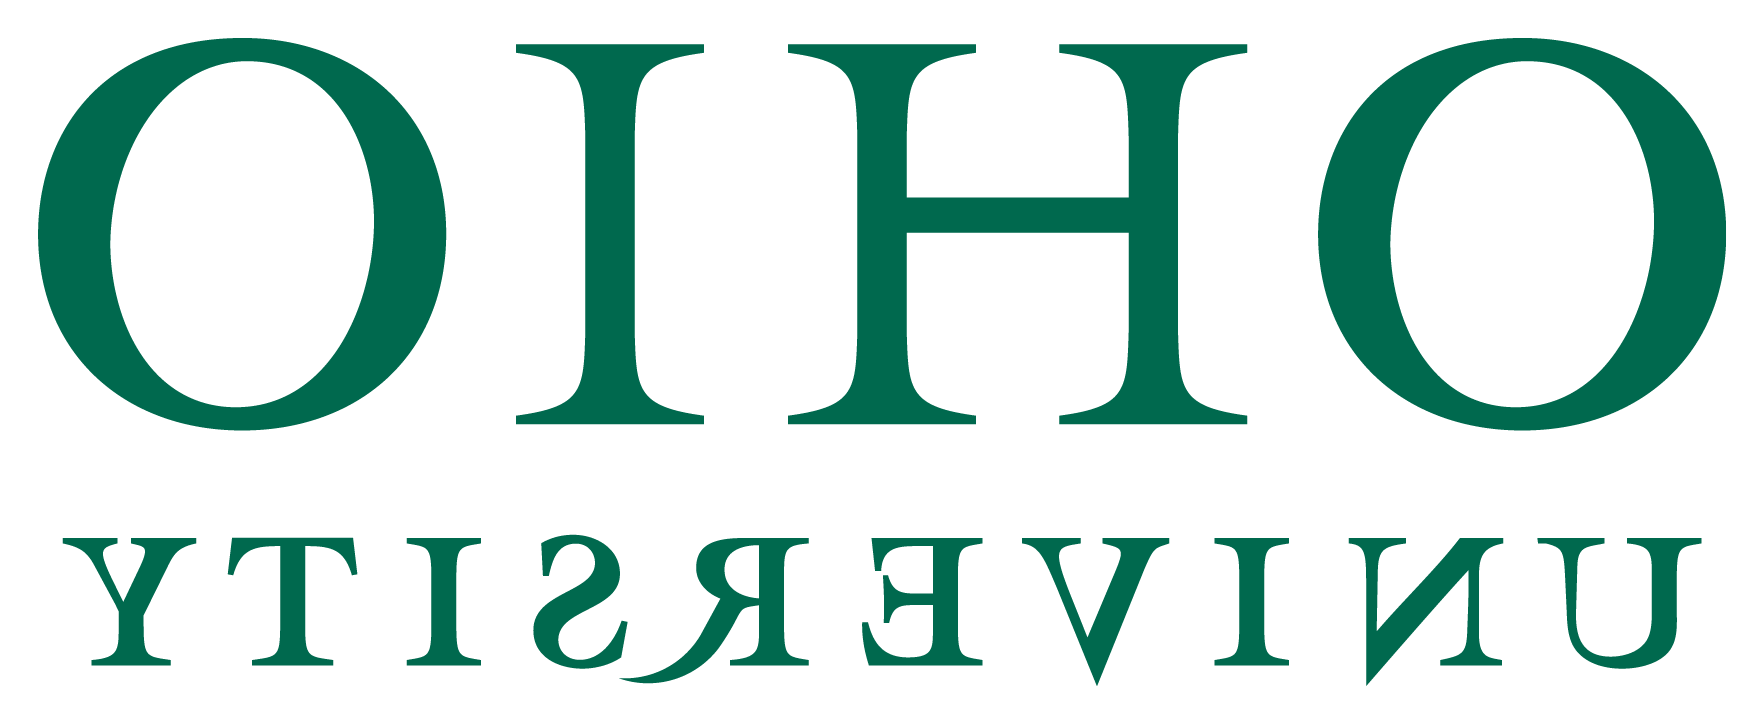 Ohio University Primary Wordmark logo